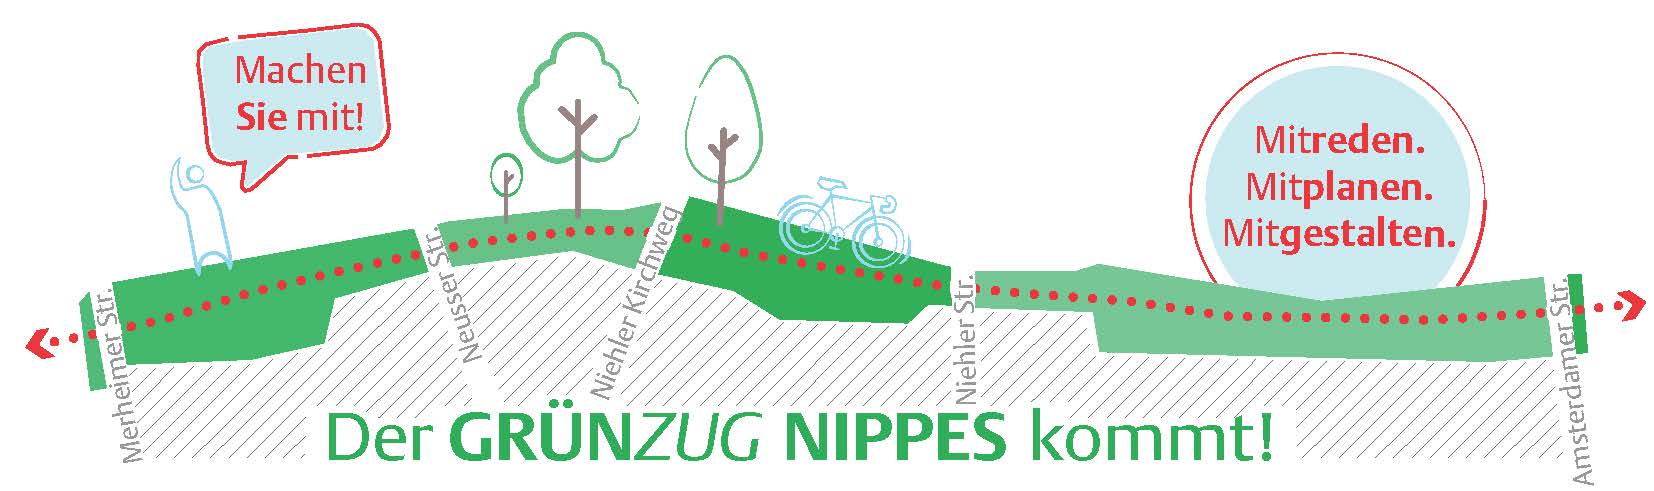 Logo des Grünzug Nippes mit gezeichnetetn Bäumen und einem Fahrrad